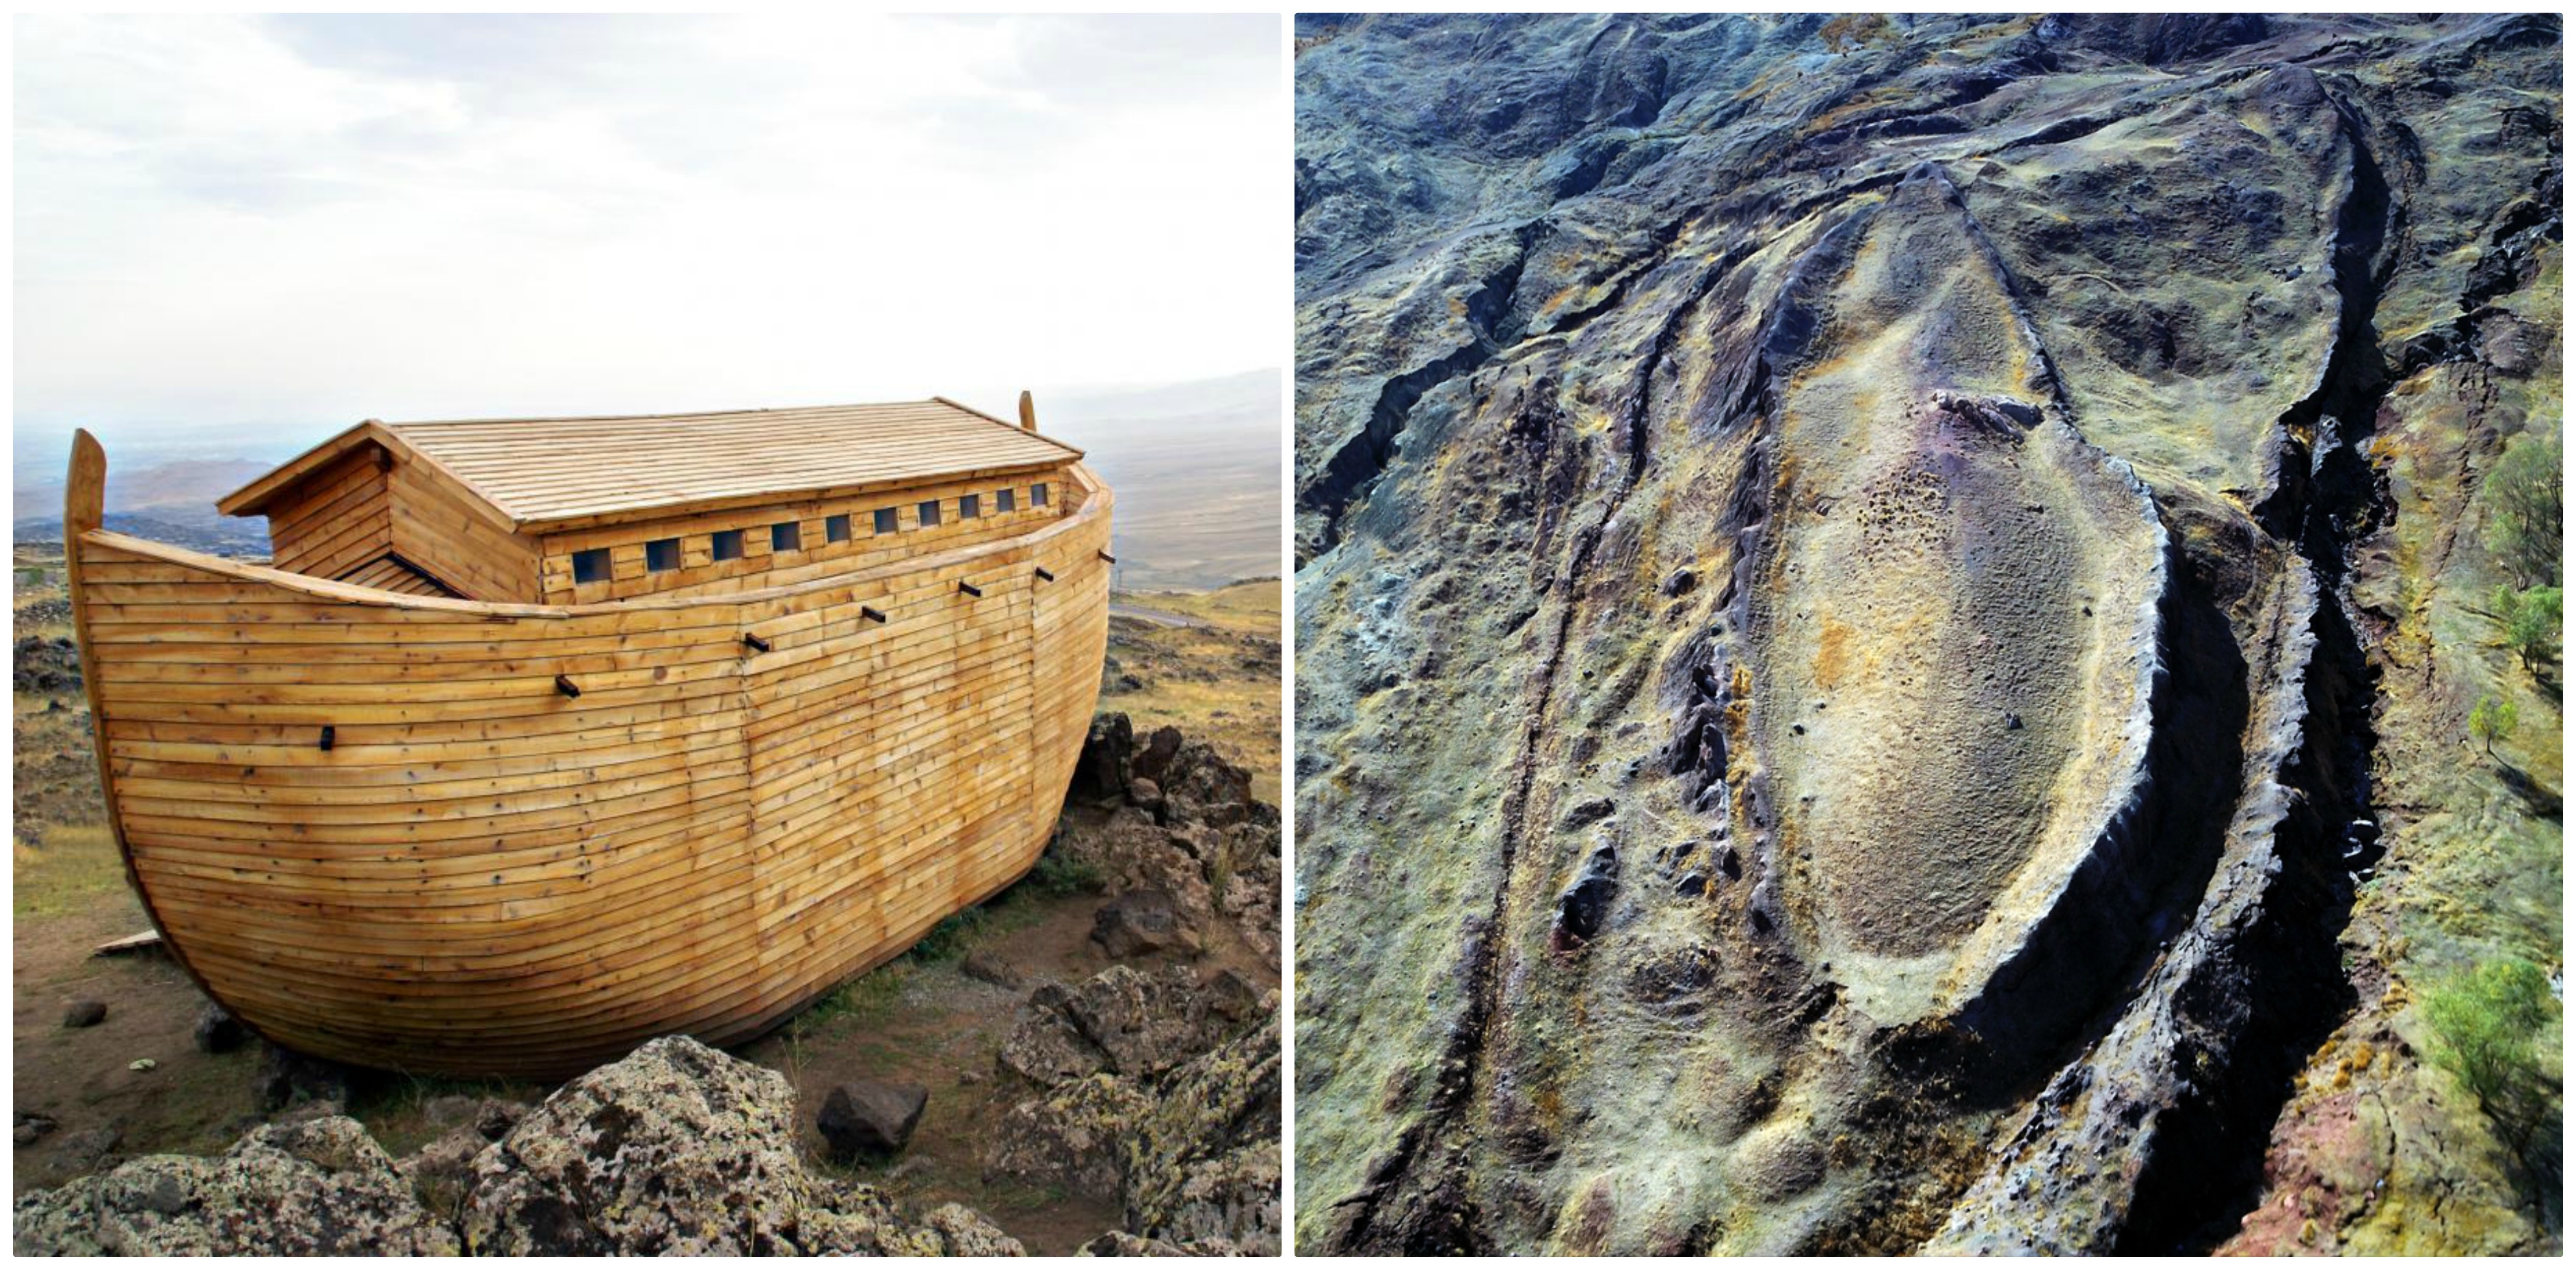 Arca lui Noe este în Iran pe vârful unui munte, cel puţin asta susţine un grup de savanți biblici